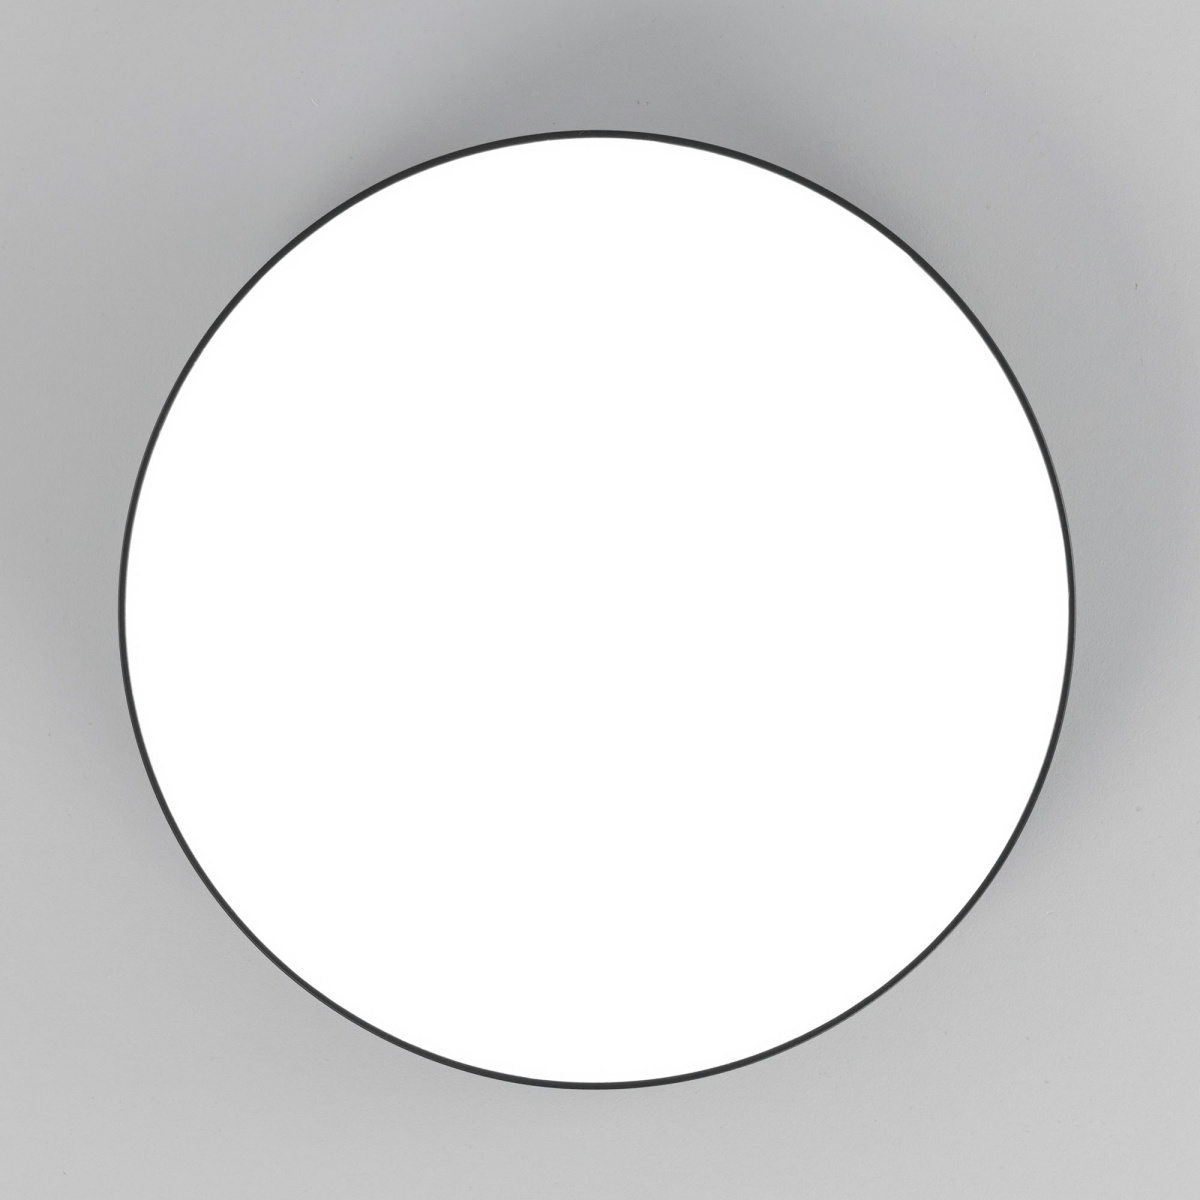 Далеко видно кругом прозрачна. Прозрачный круг. В круге белом. Белый кружок. Белый круг на прозрачном фоне.